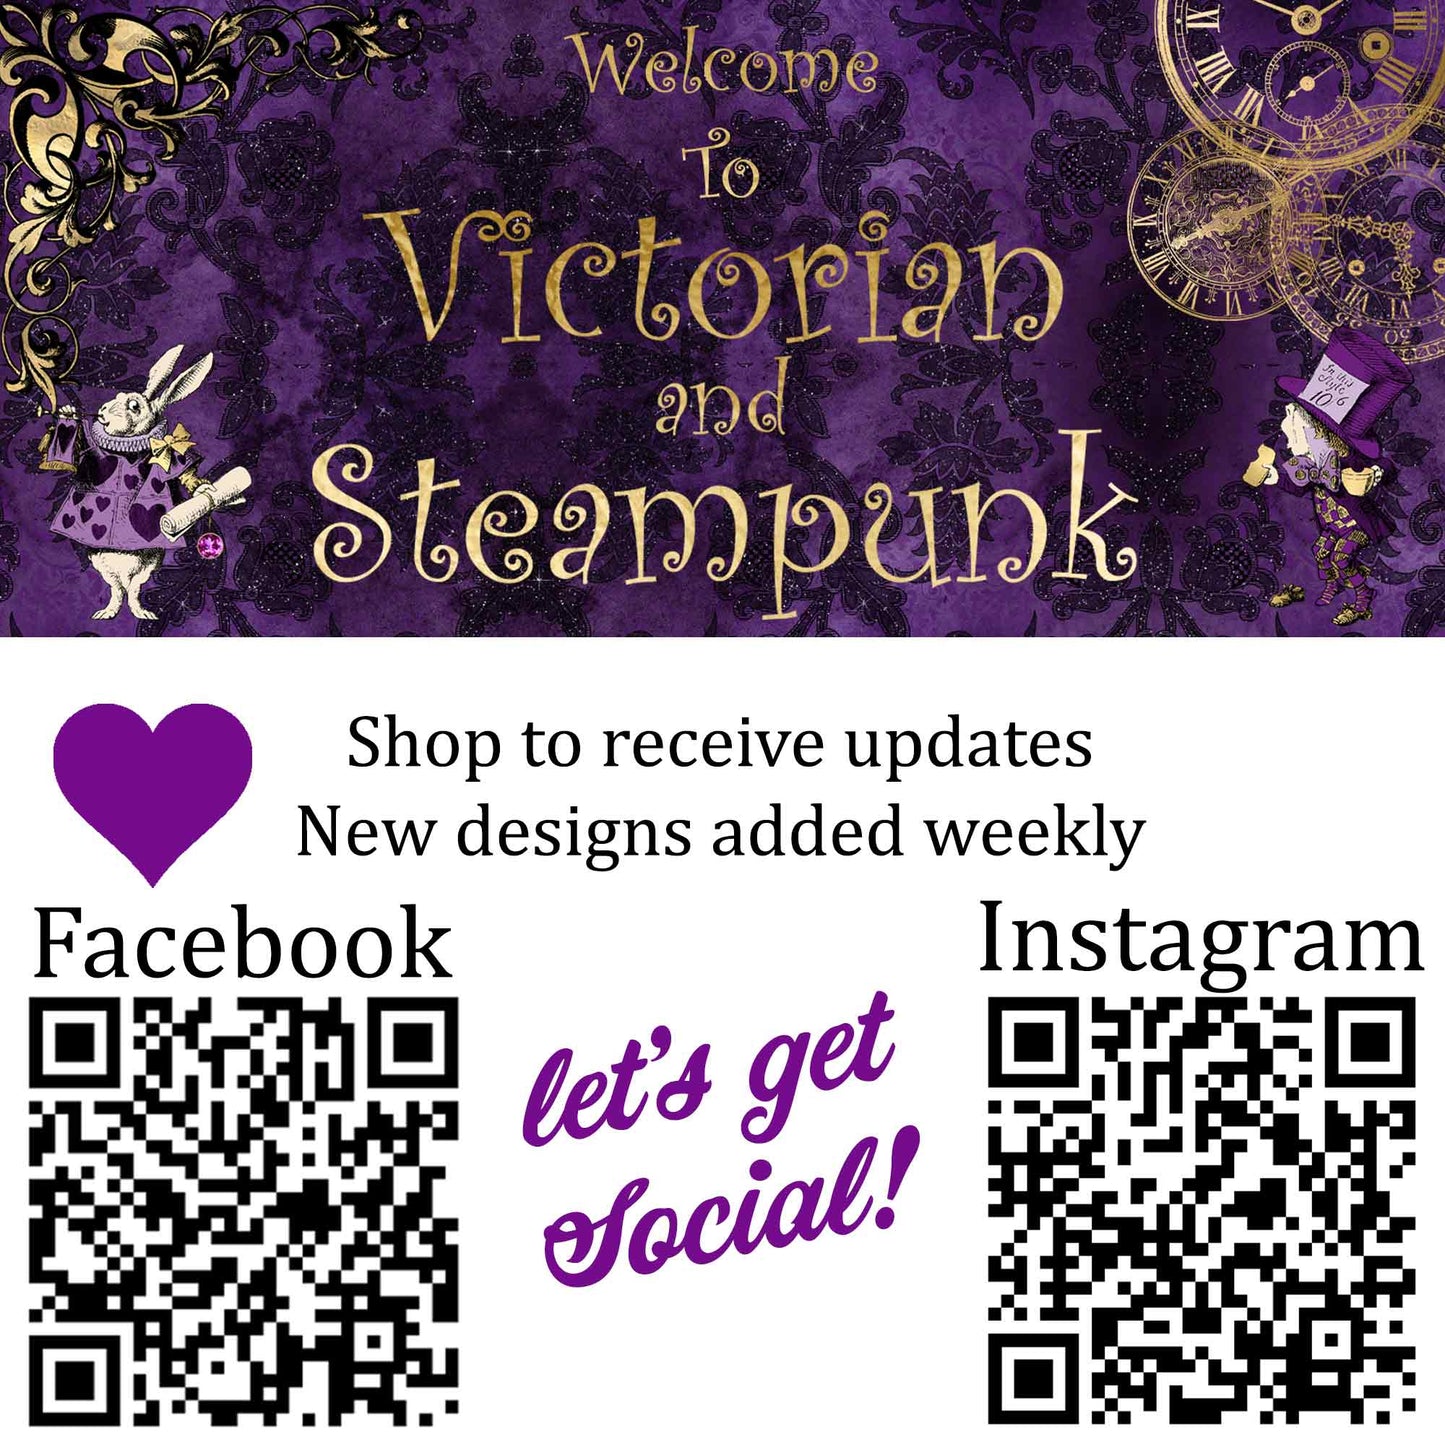 Purple Steampunk Clockwork Gears Hi Top Sneakers (JPSNSTEAM3)